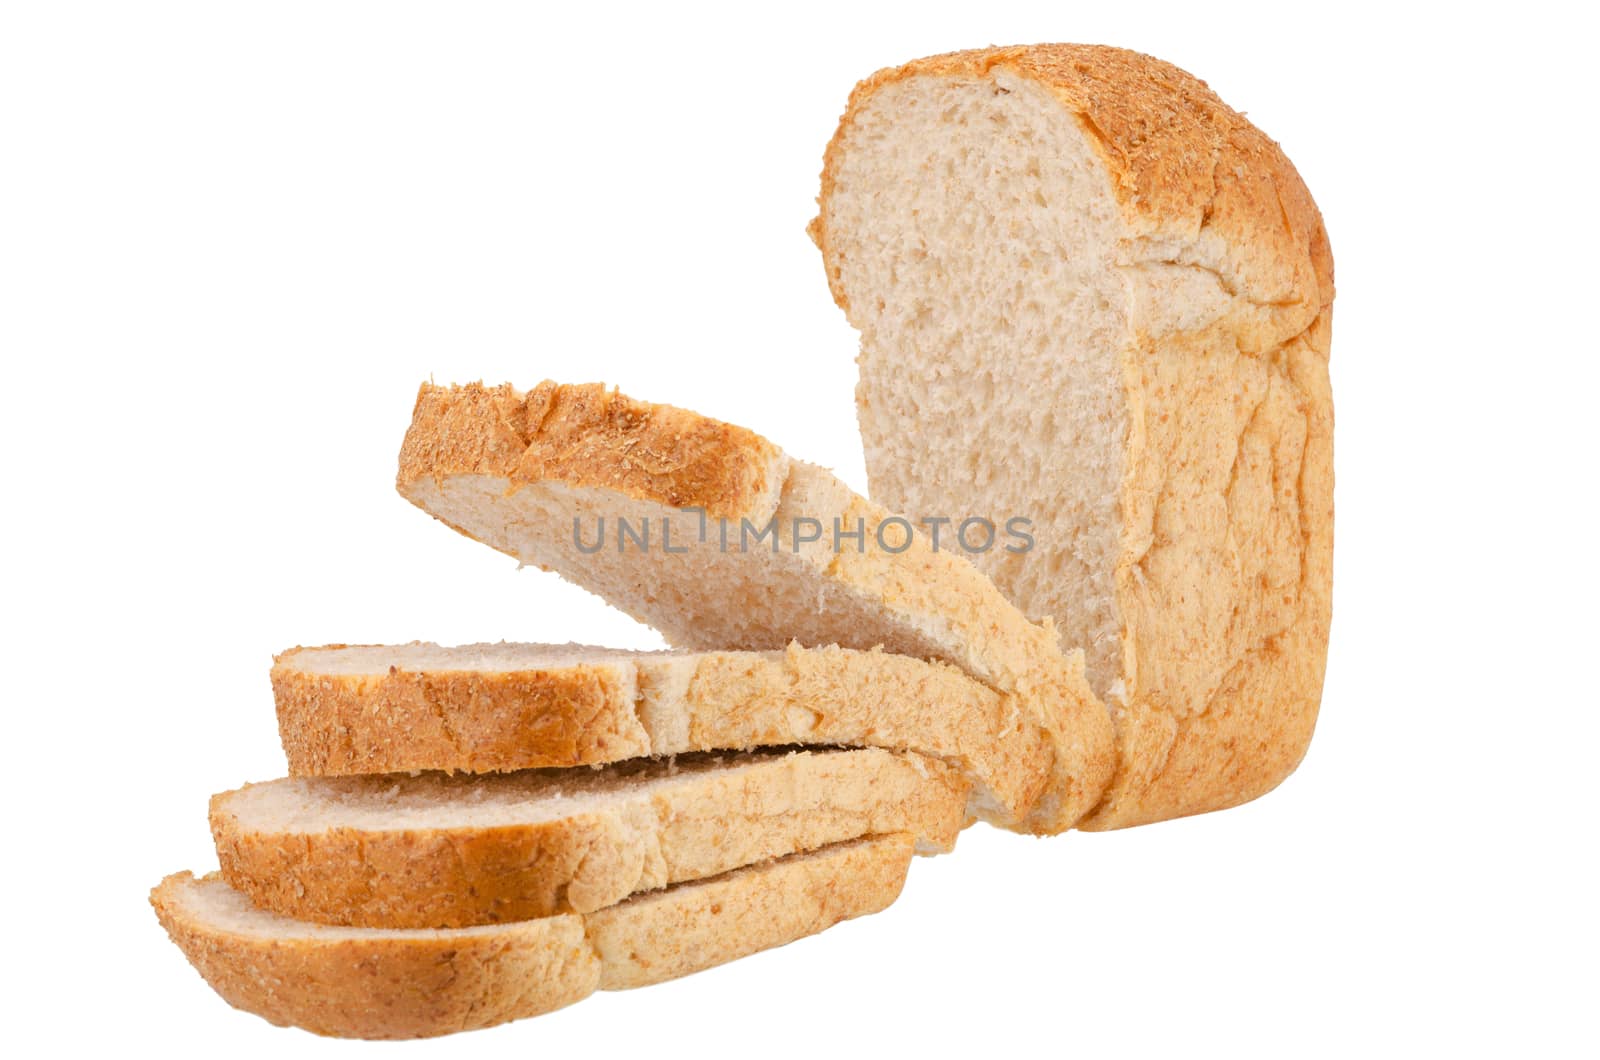 Bran bread on white background